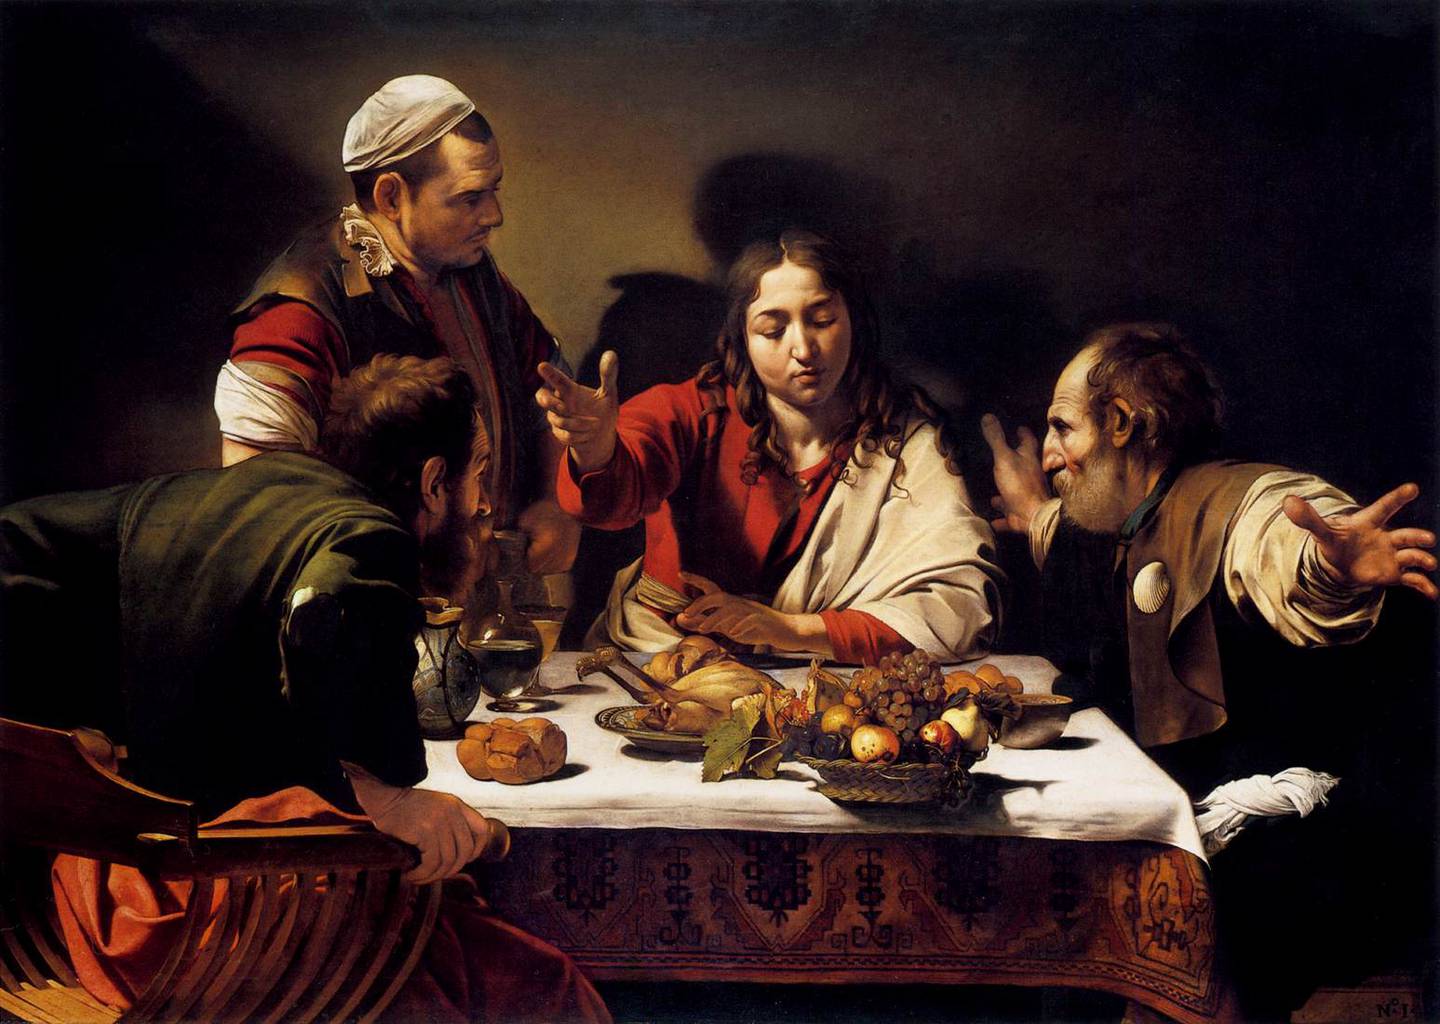 Måltidet i Emmaus av Caravaggio